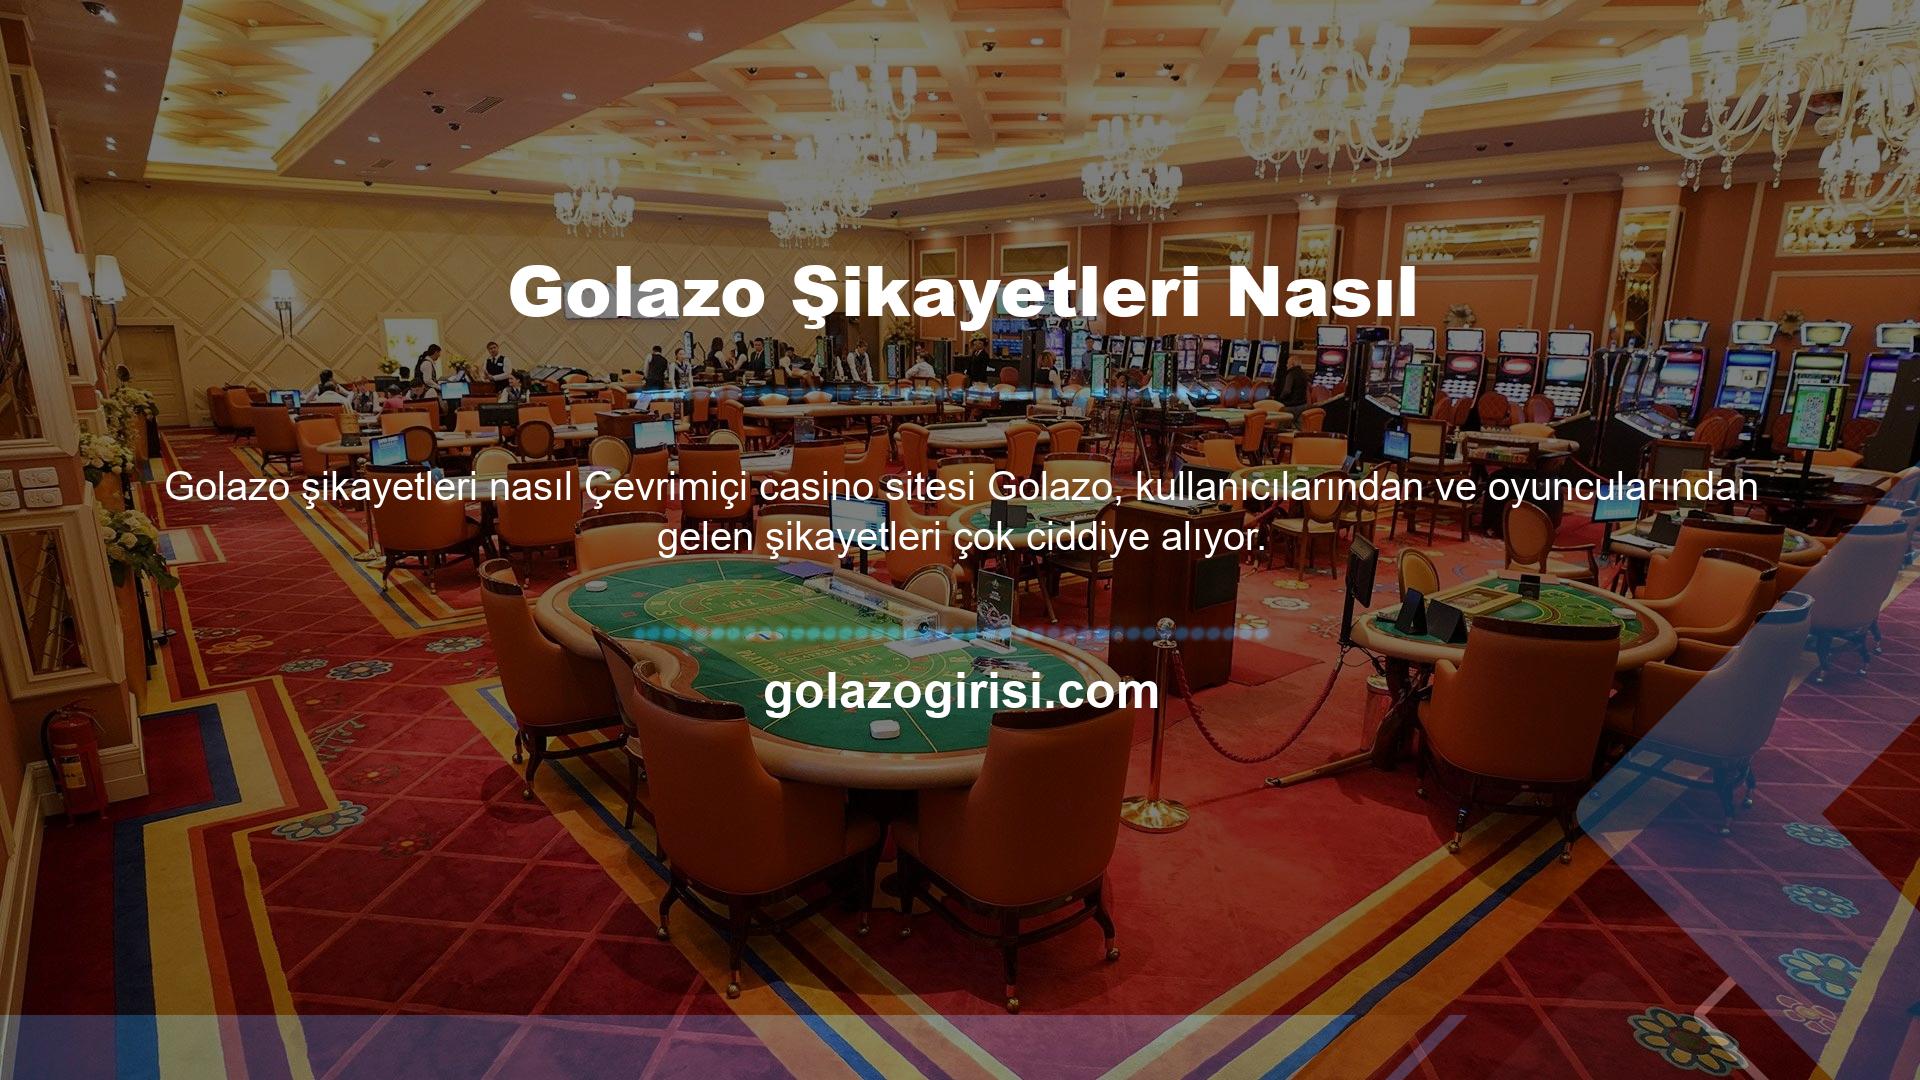 Elbette diğer siteler gibi Golazo hayal kırıklıkları var, ancak siteyi deneyimleyen kullanıcılar Golazo çok yüksek değerlendiriyor